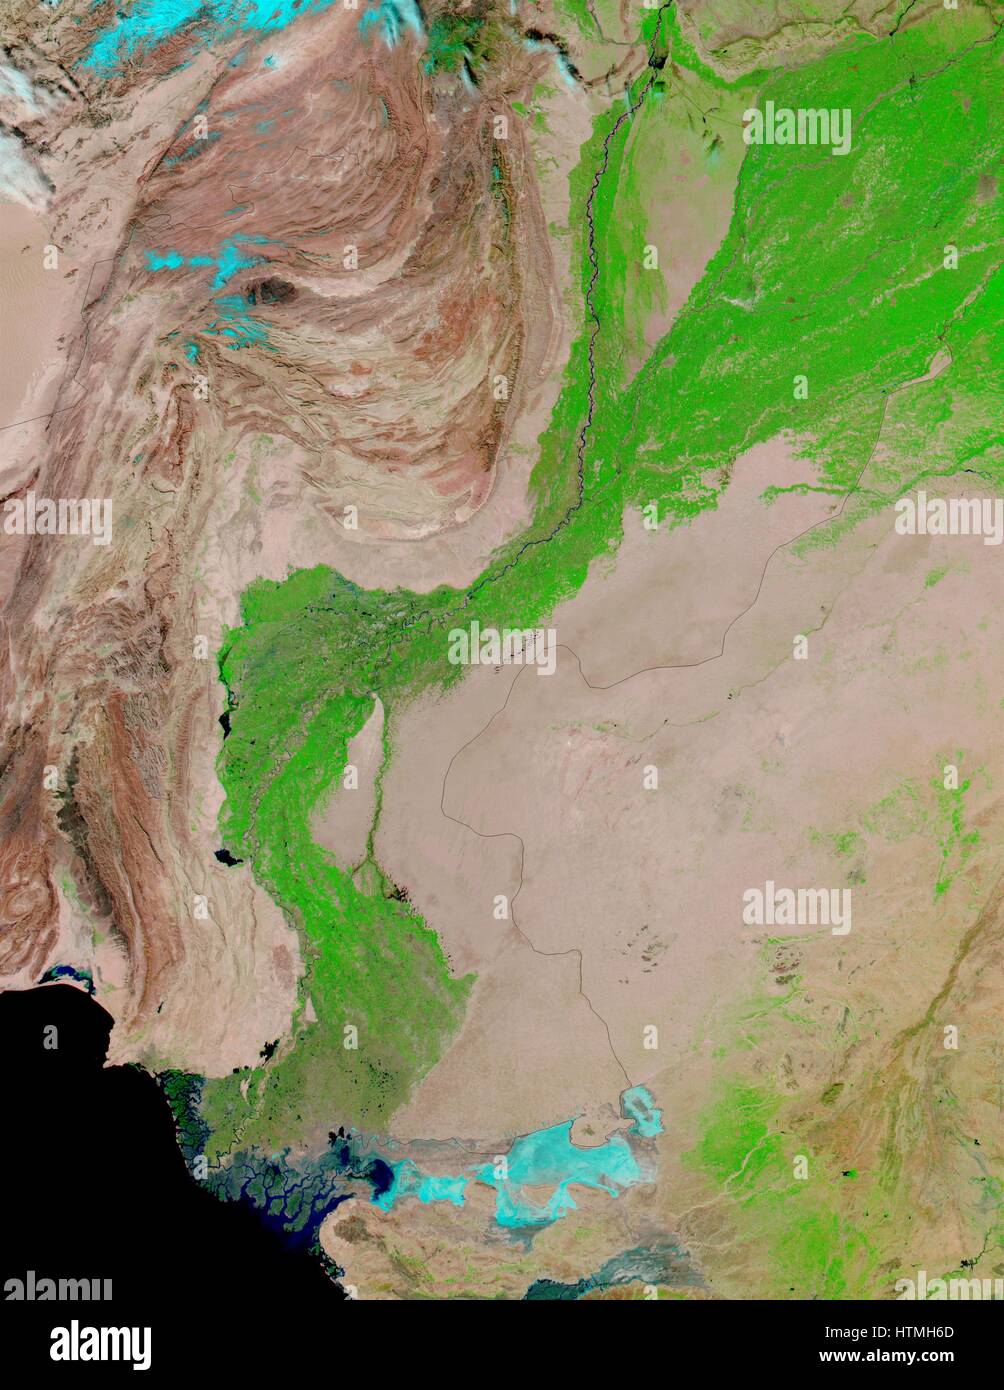 False-Farbbilder verfügen über den Indus River Valley, eine Oase der Vegetation ermöglicht durch den Indus-Fluss, der als einem dünnen schwarzen Faden am Arabischen Meer in die Falschfarbenbild Richtung sichtbar ist. Stockfoto